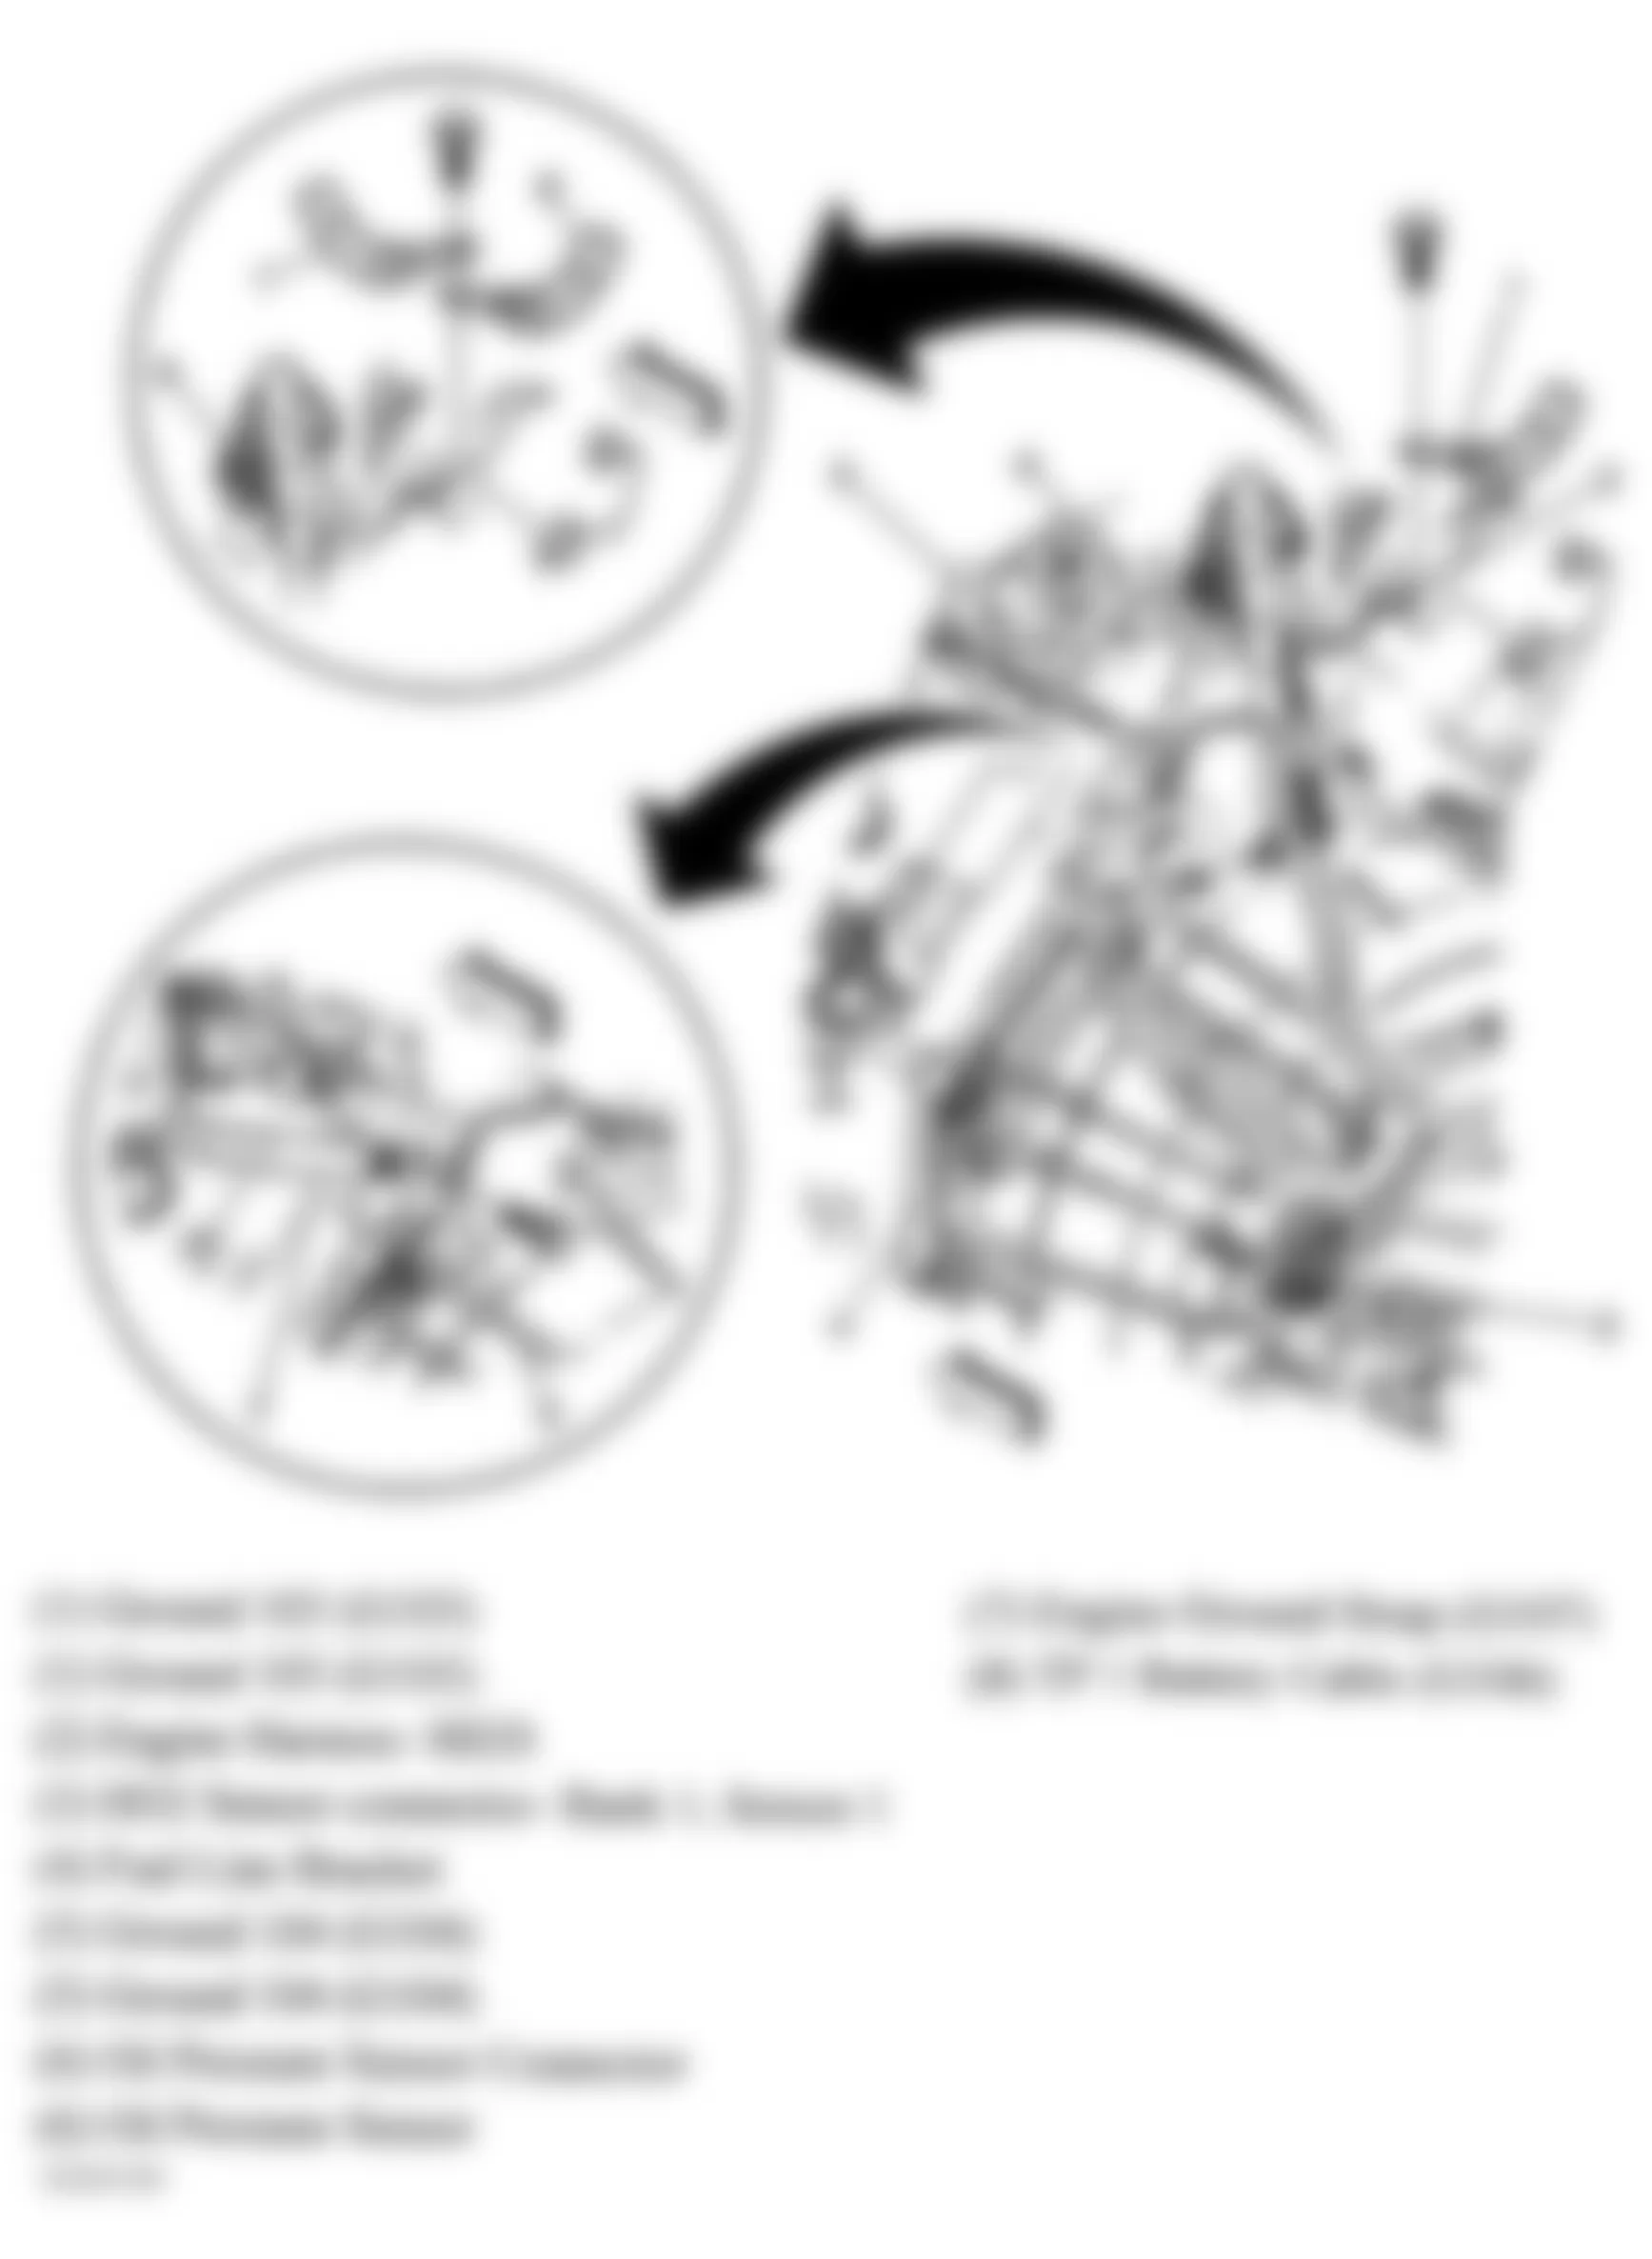 GMC Yukon Denali 2004 - Component Locations -  Rear Of Engine (4.8L, 5.3L & 6.0L)